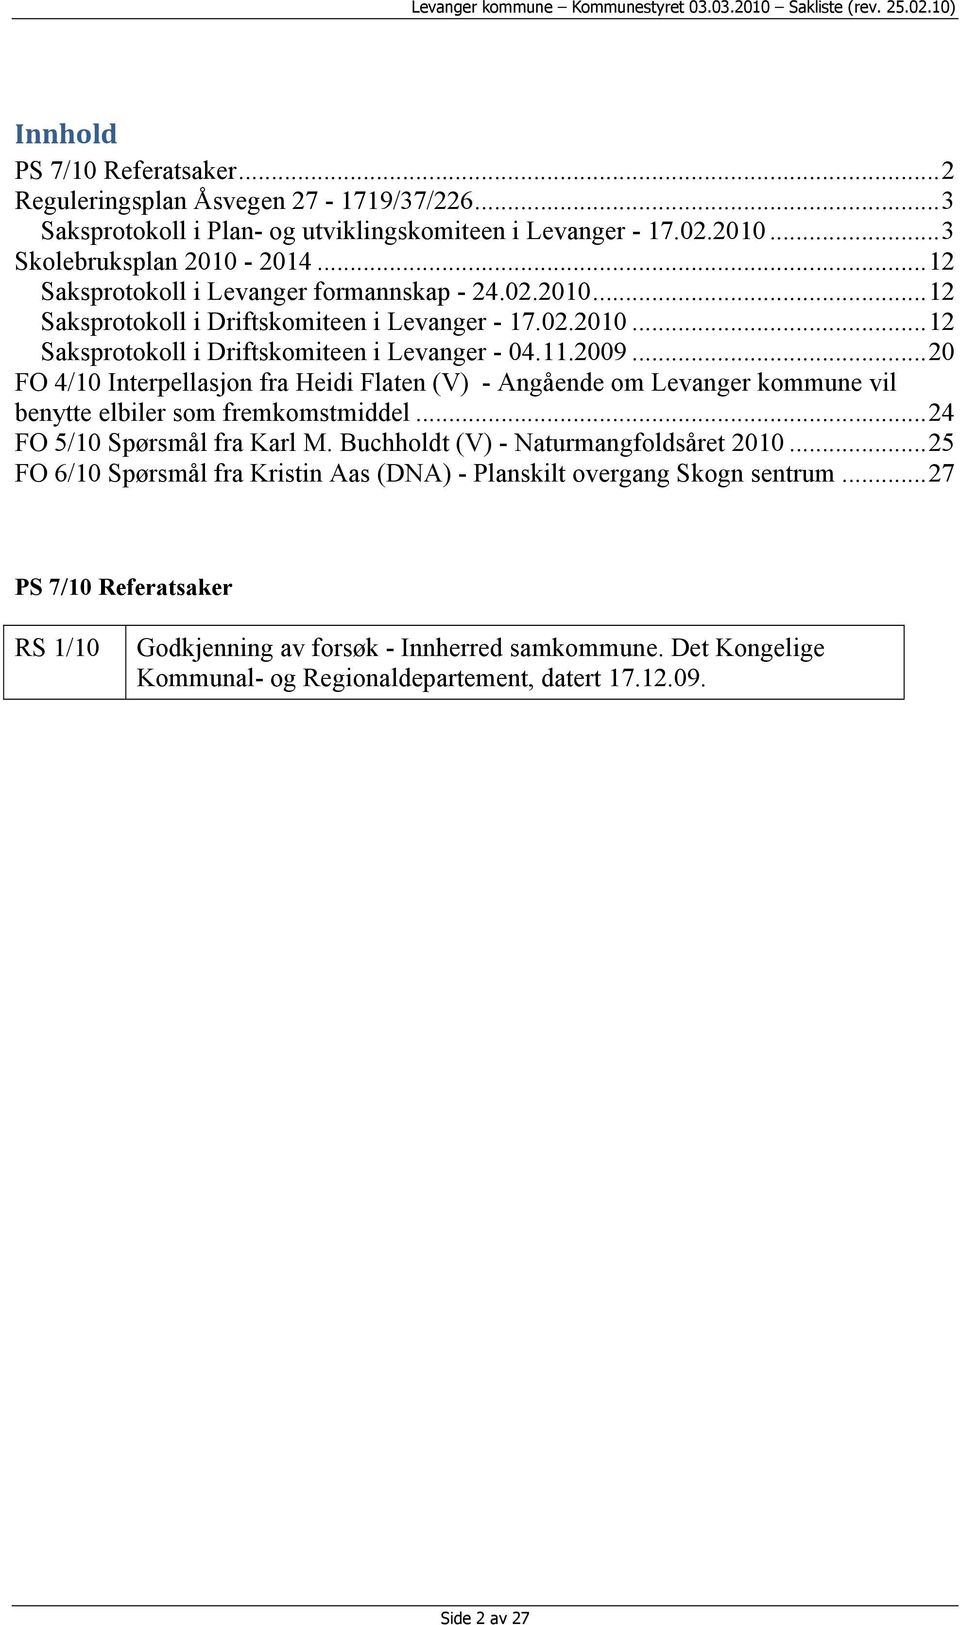 .. 20 FO 4/10 Interpellasjon fra Heidi Flaten (V) - Angående om Levanger kommune vil benytte elbiler som fremkomstmiddel... 24 FO 5/10 Spørsmål fra Karl M. Buchholdt (V) - Naturmangfoldsåret 2010.